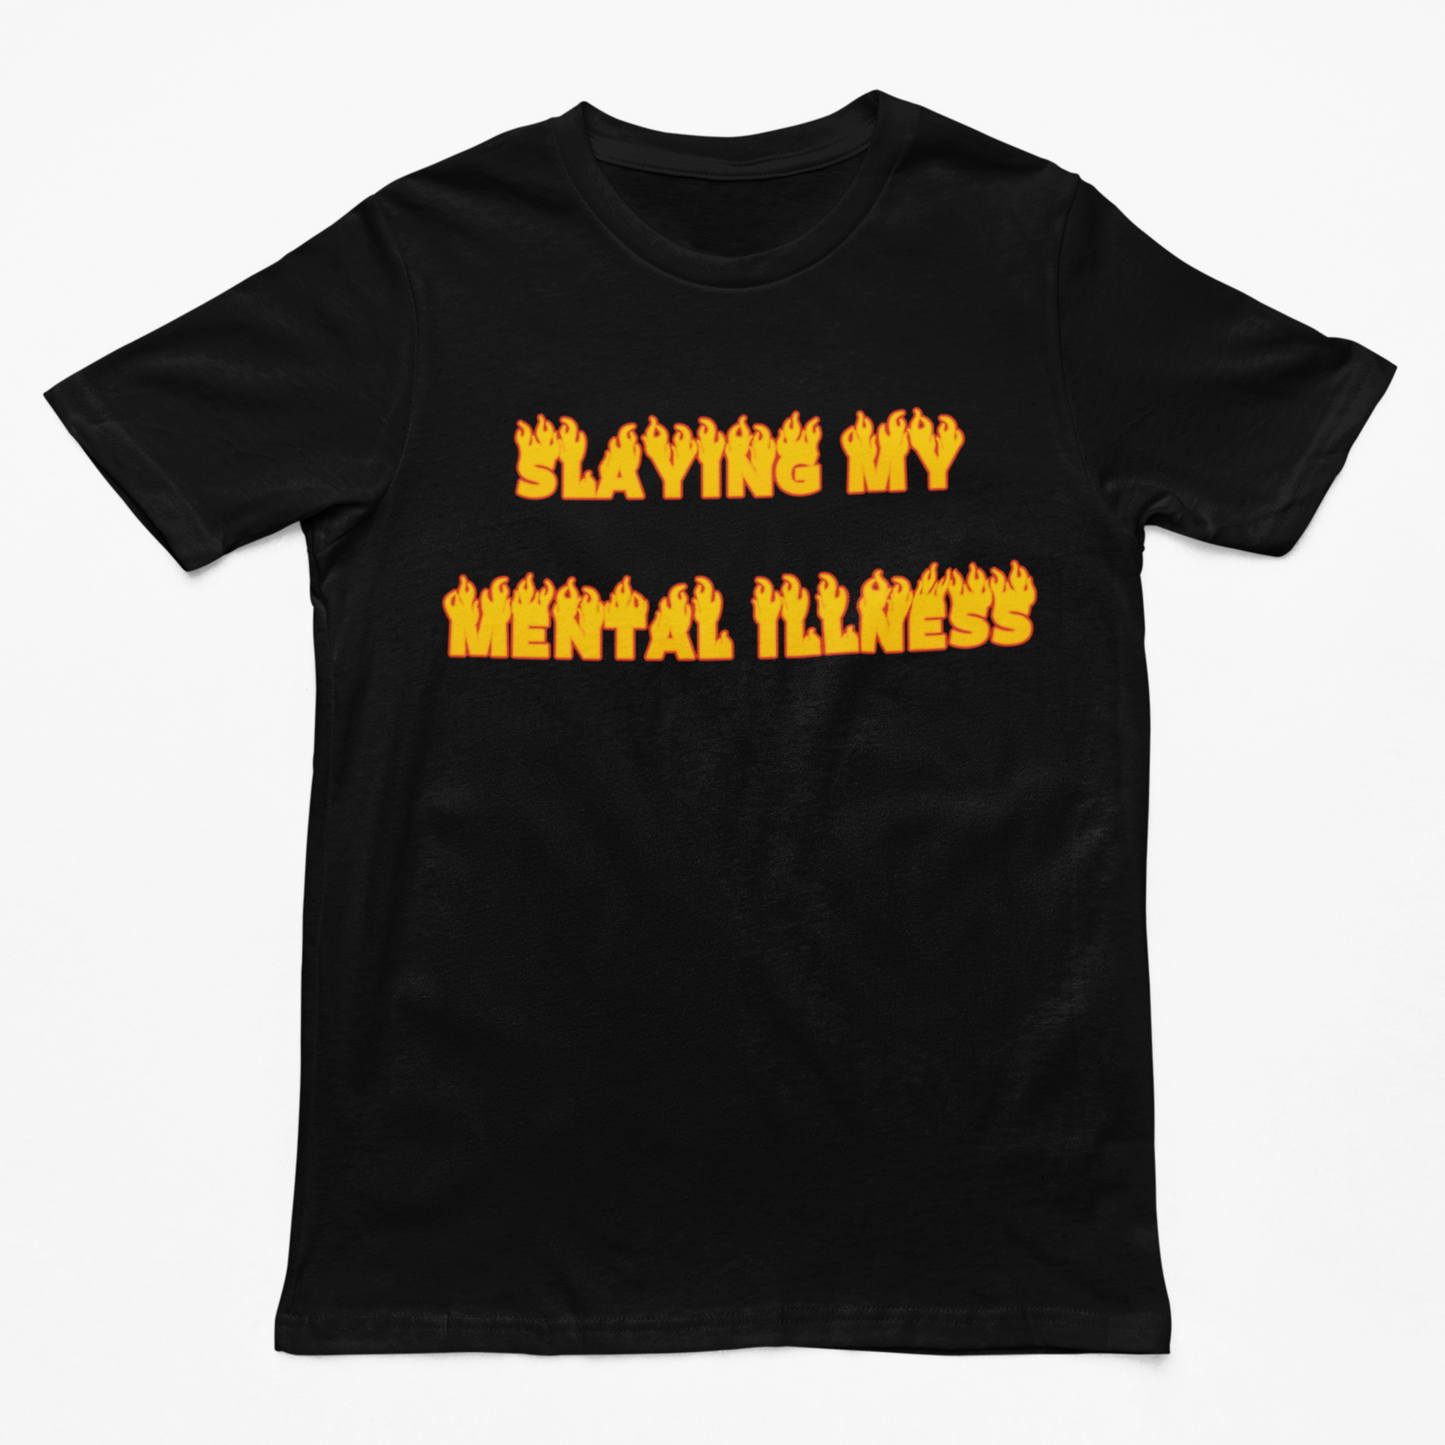 Slaying My Mental Illness t-shirt